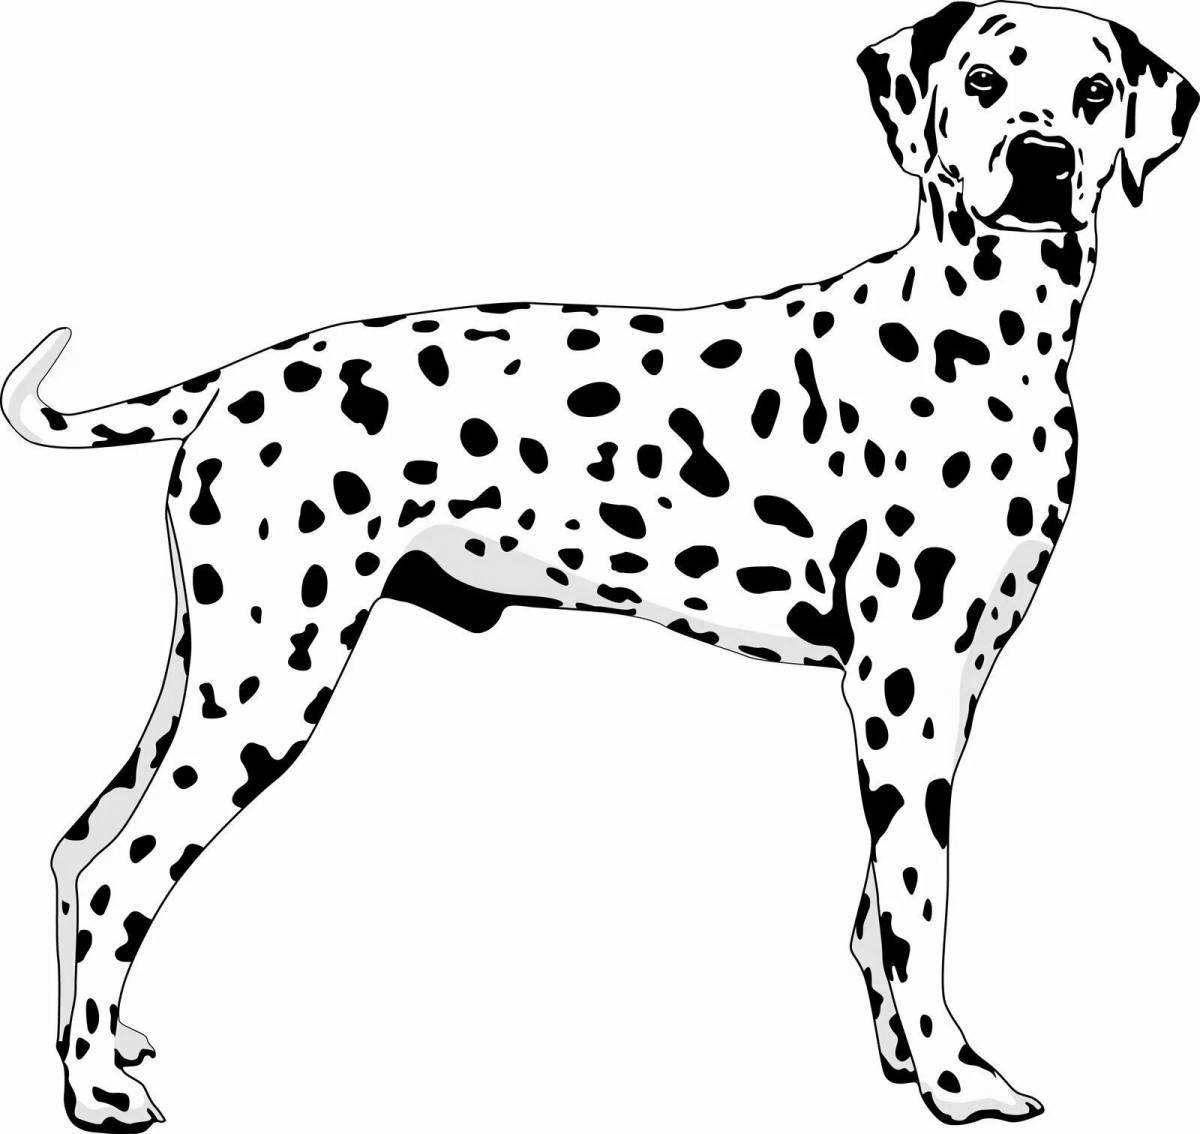 Adorable Dalmatian dog coloring book